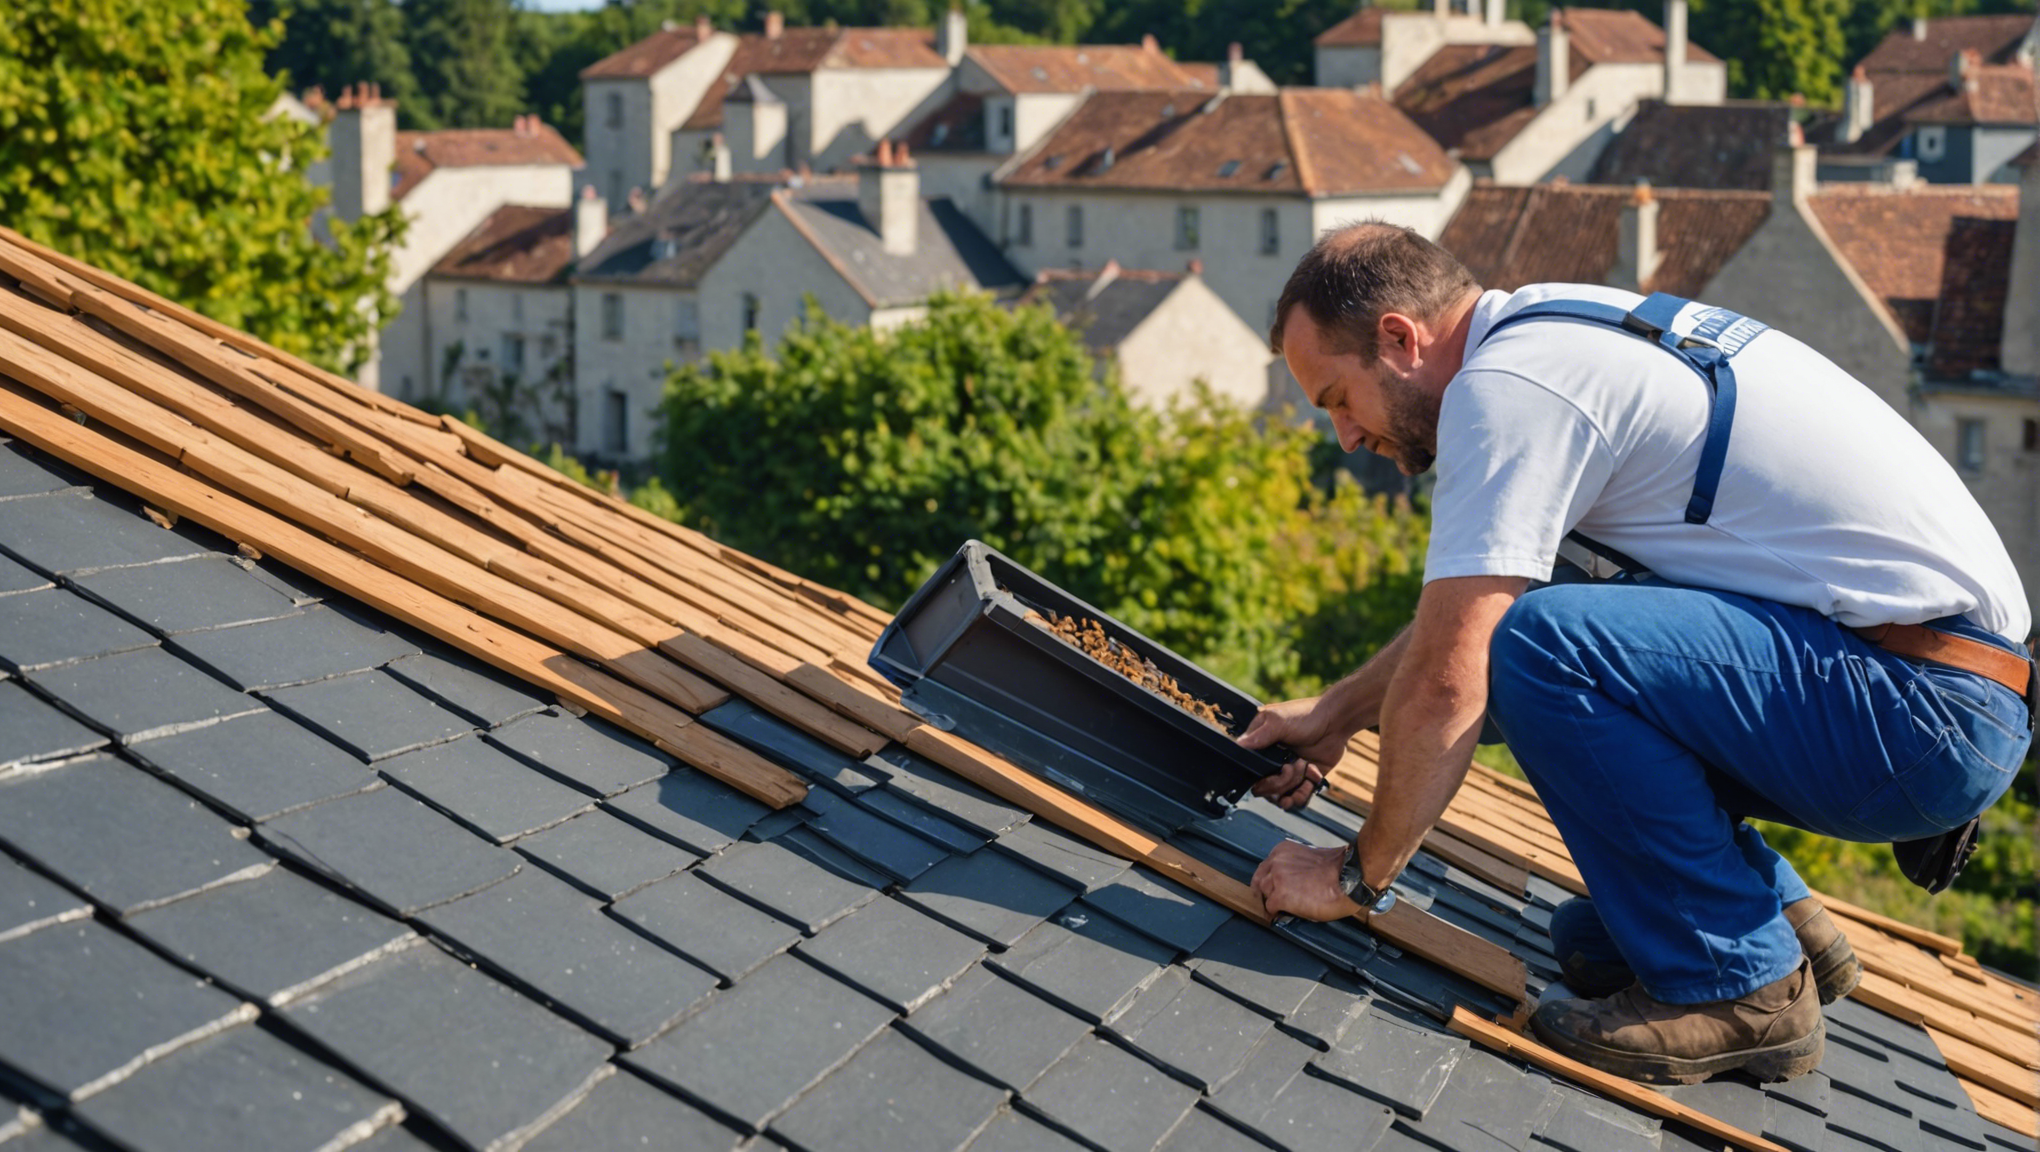 découvrez le rôle essentiel d'un couvreur zingueur pour l'entretien et la rénovation de votre toiture à poitiers. confiez vos travaux de couverture à un professionnel qualifié pour assurer la durabilité de votre toit.